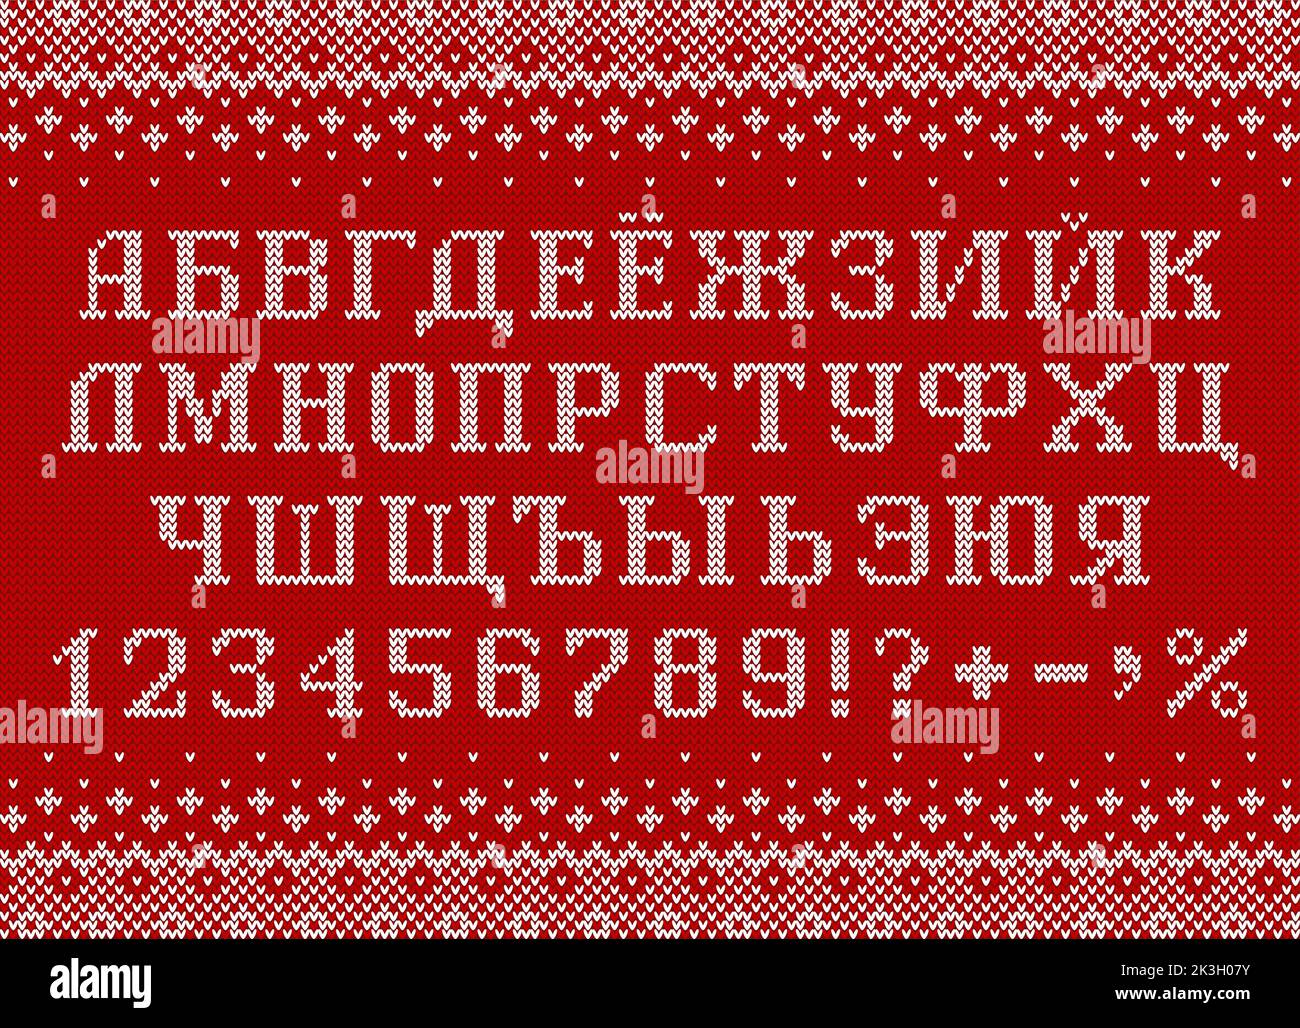 Kyrillische Schrift im Sweatshirt-Stil. Gestrickte russische Buchstaben, Zahlen und Symbole für Neujahr und Wintersaison. Stock Vektor